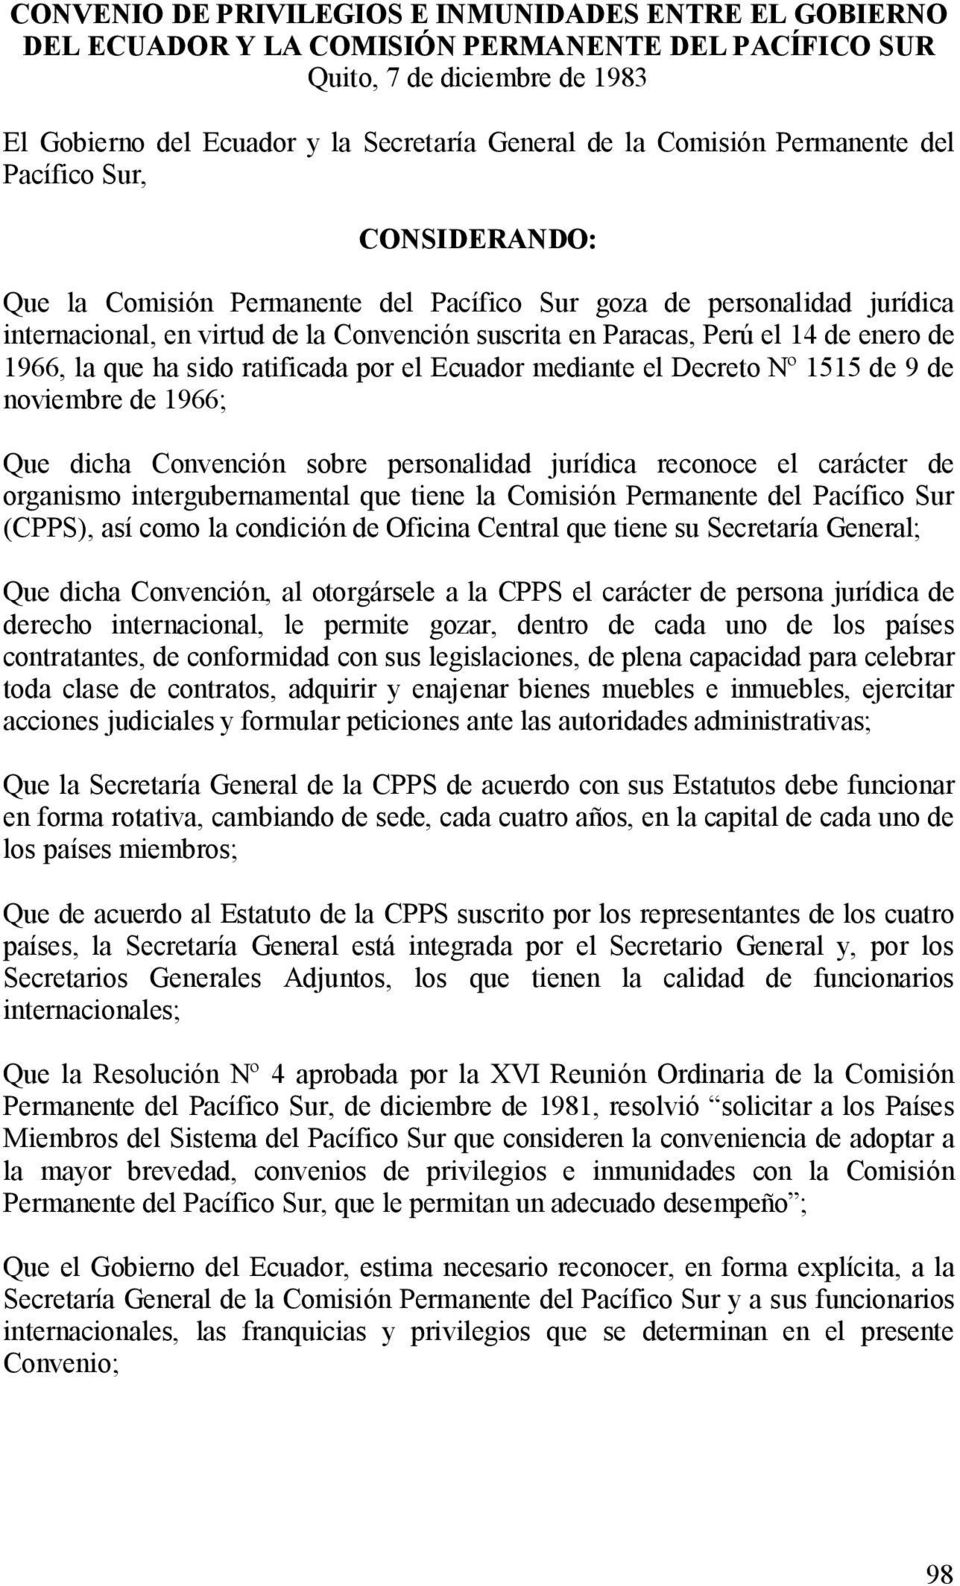 de enero de 1966, la que ha sido ratificada por el Ecuador mediante el Decreto Nº 1515 de 9 de noviembre de 1966; Que dicha Convención sobre personalidad jurídica reconoce el carácter de organismo